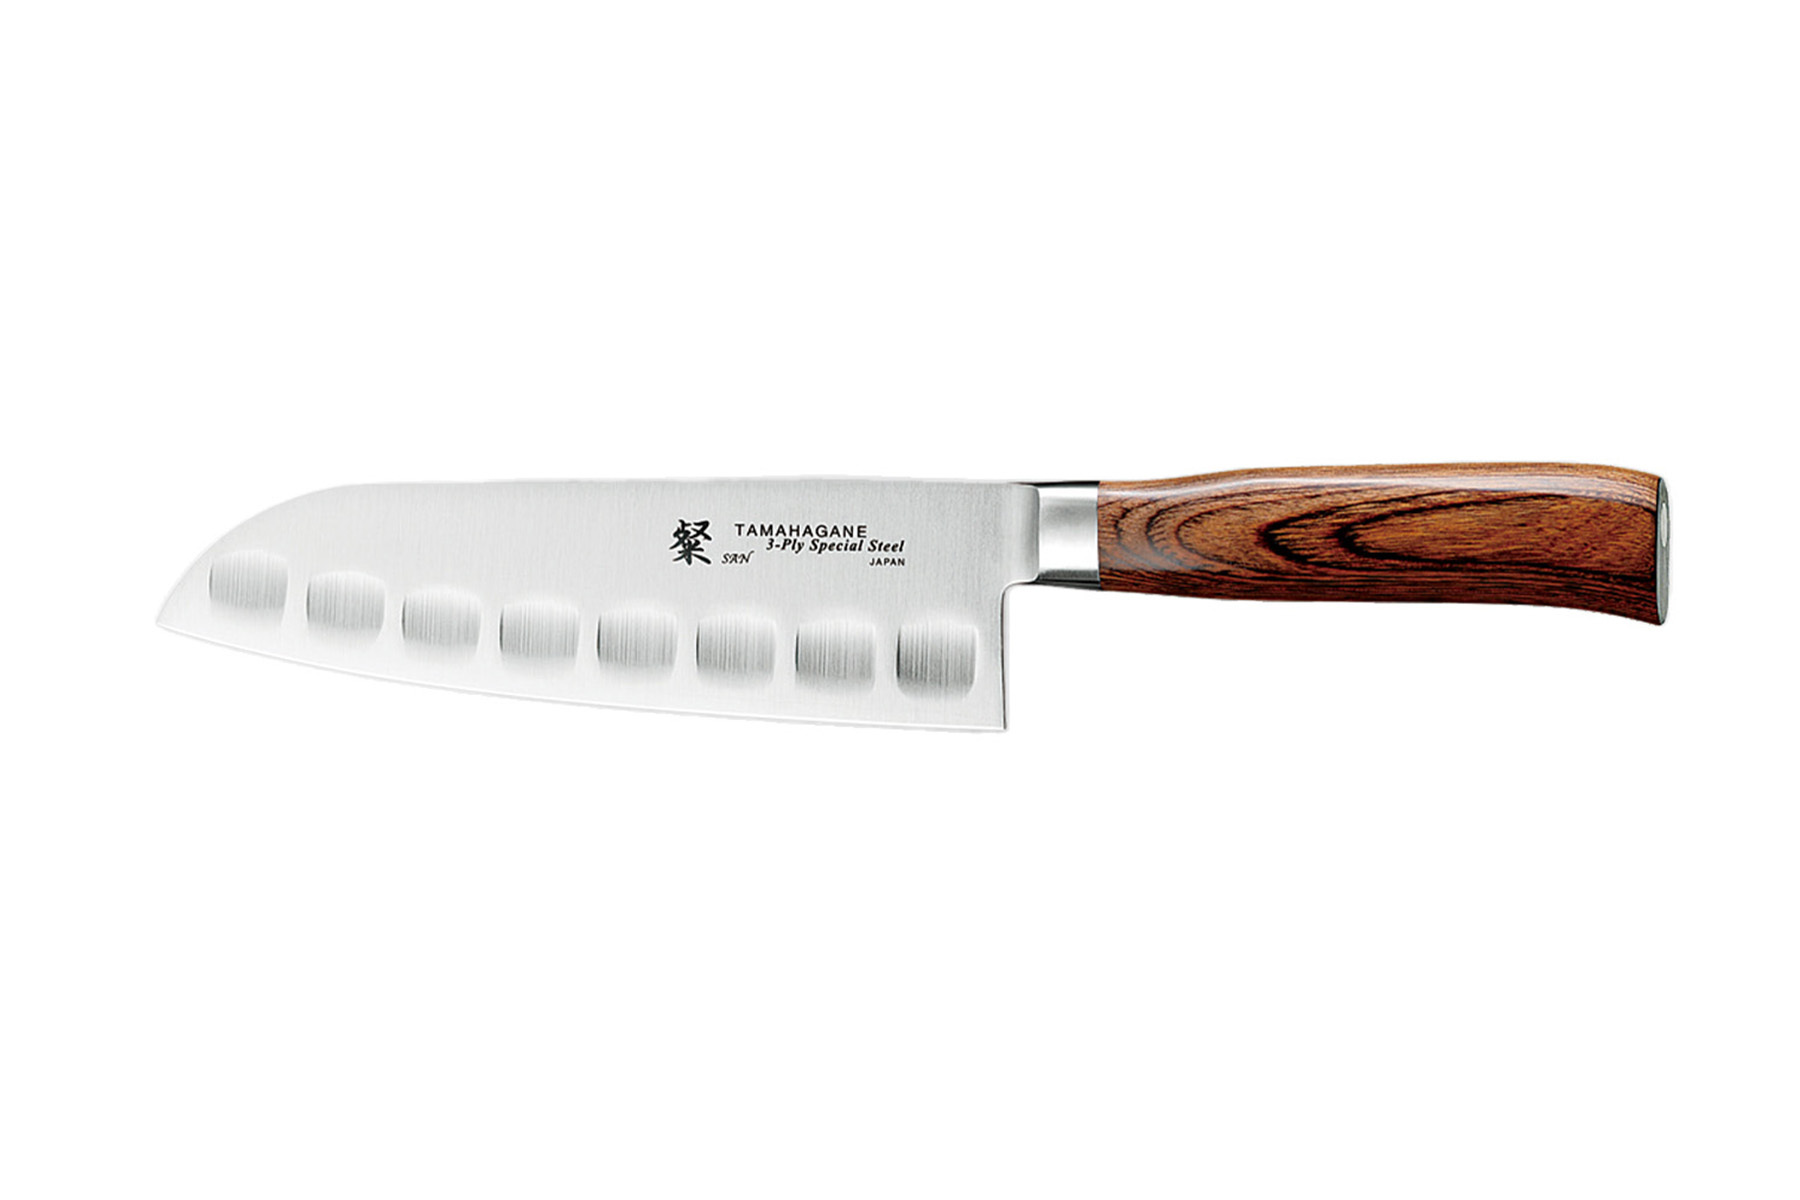 Couteau japonais Tamahagane San - Couteau santoku lame alvéolée 17,5 cm